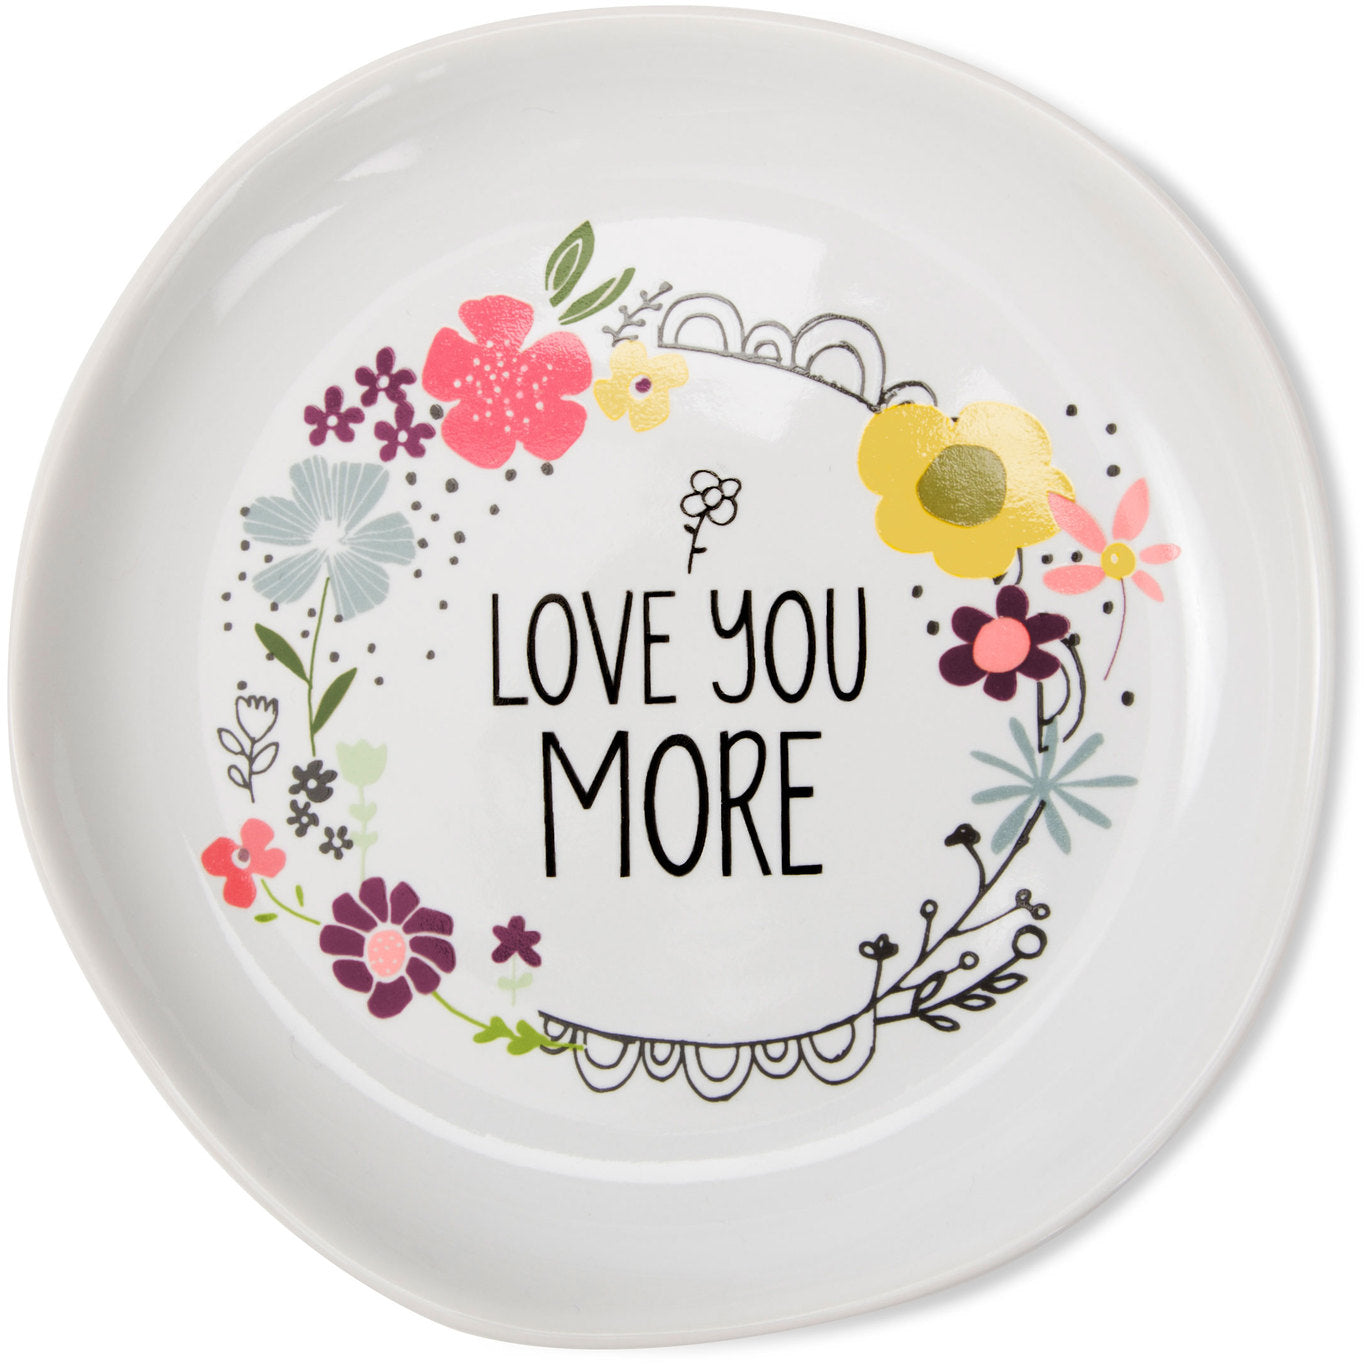 Love you more Keepsake Dish Keepsake Dish - Beloved Gift Shop